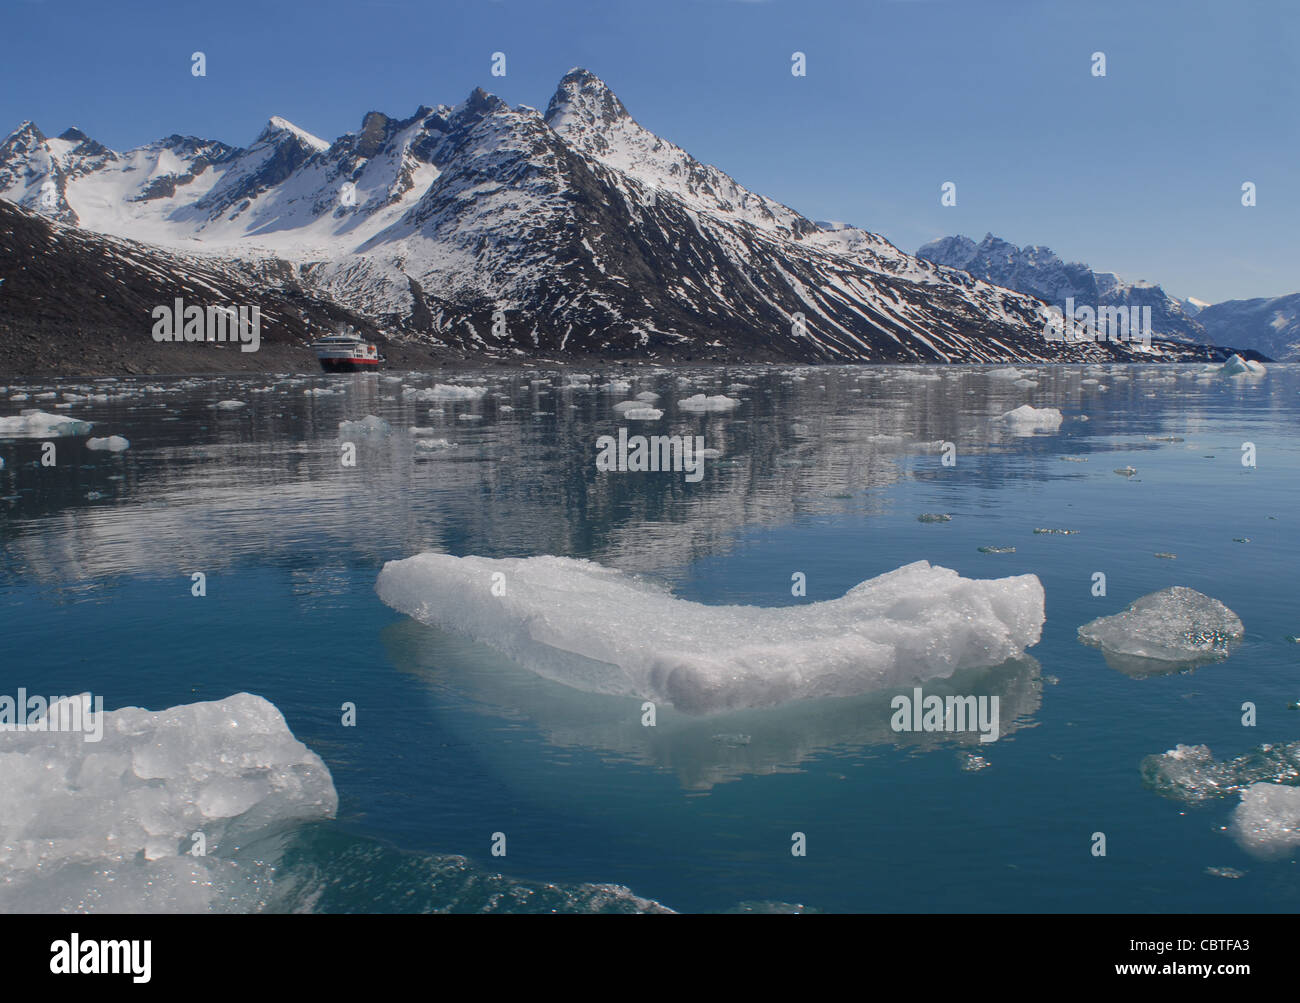 La glace, la neige, et des pics de montagne à Kangerlussuatsiaq Fjord (ancienne orthographe : Kangerdlugssuatsiaq : danois, Evighedsfjorden), Groenland Banque D'Images